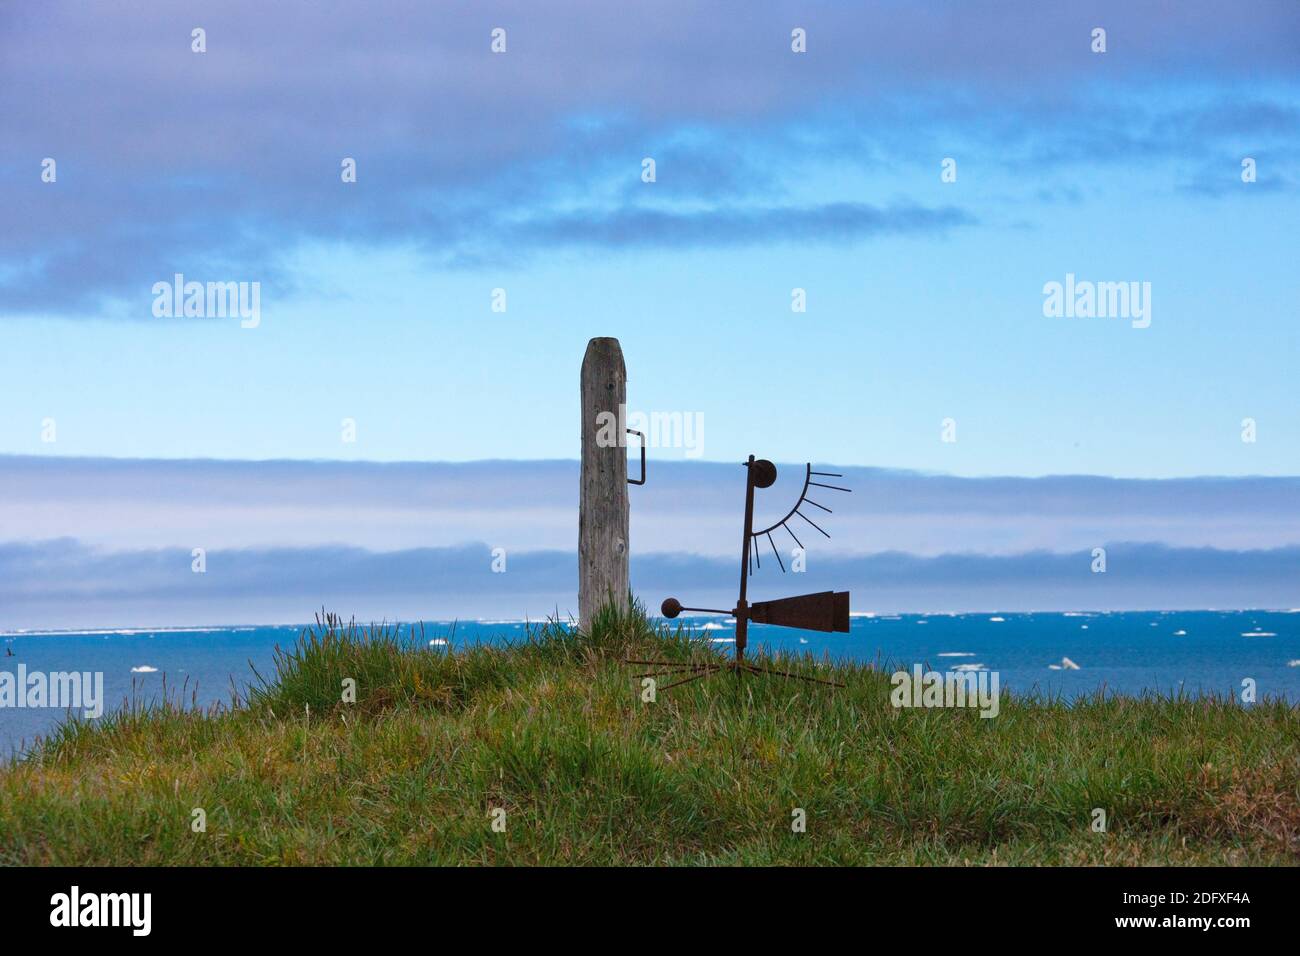 Panneau de vent sur l'île de Kolyuchin, autrefois une importante station de recherche polaire russe, mer de Béring, extrême-Orient russe Banque D'Images